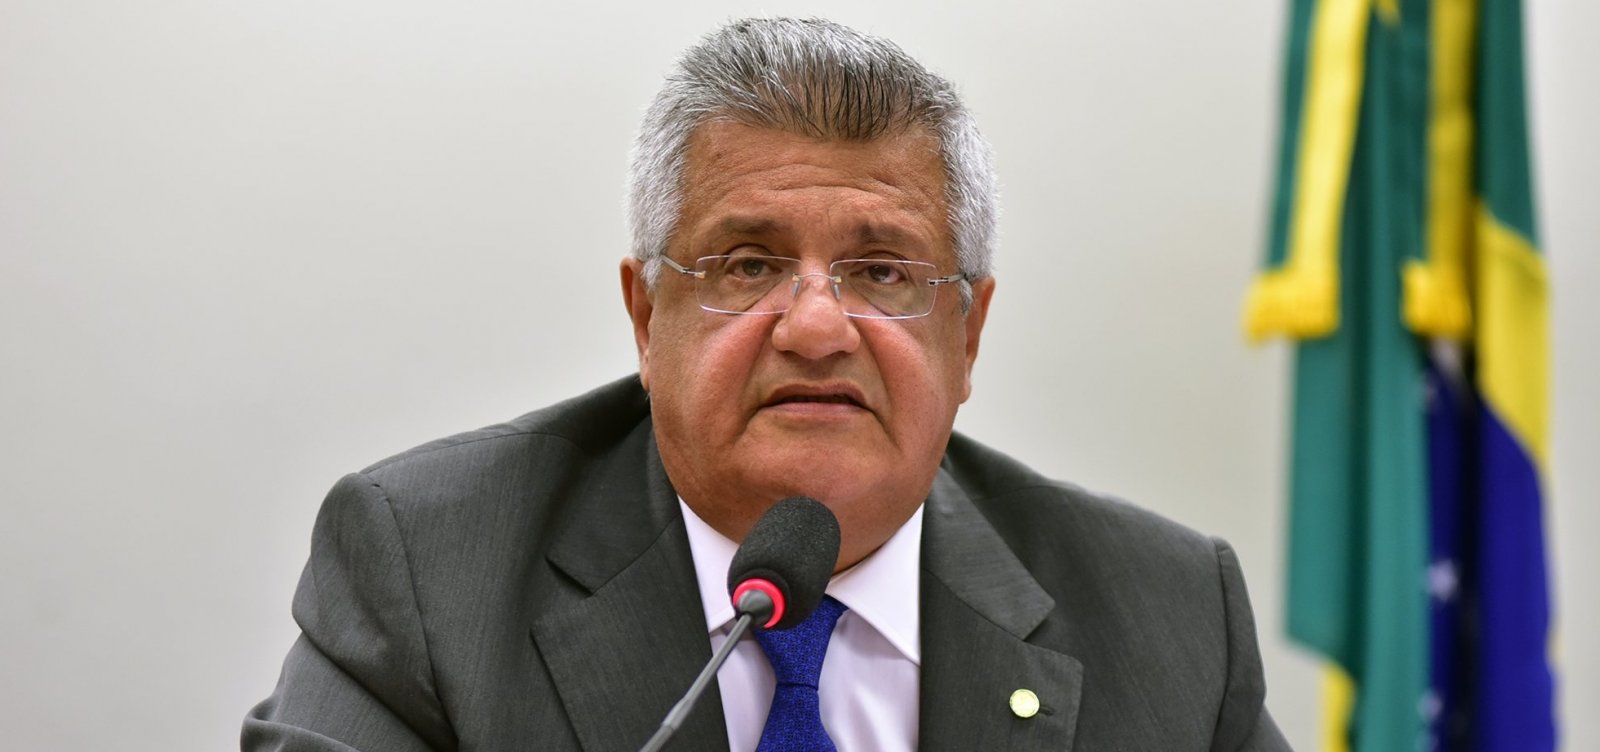 Álvaro Dias não pode ‘incorporar posições retrógradas do DEM’, diz Bacelar